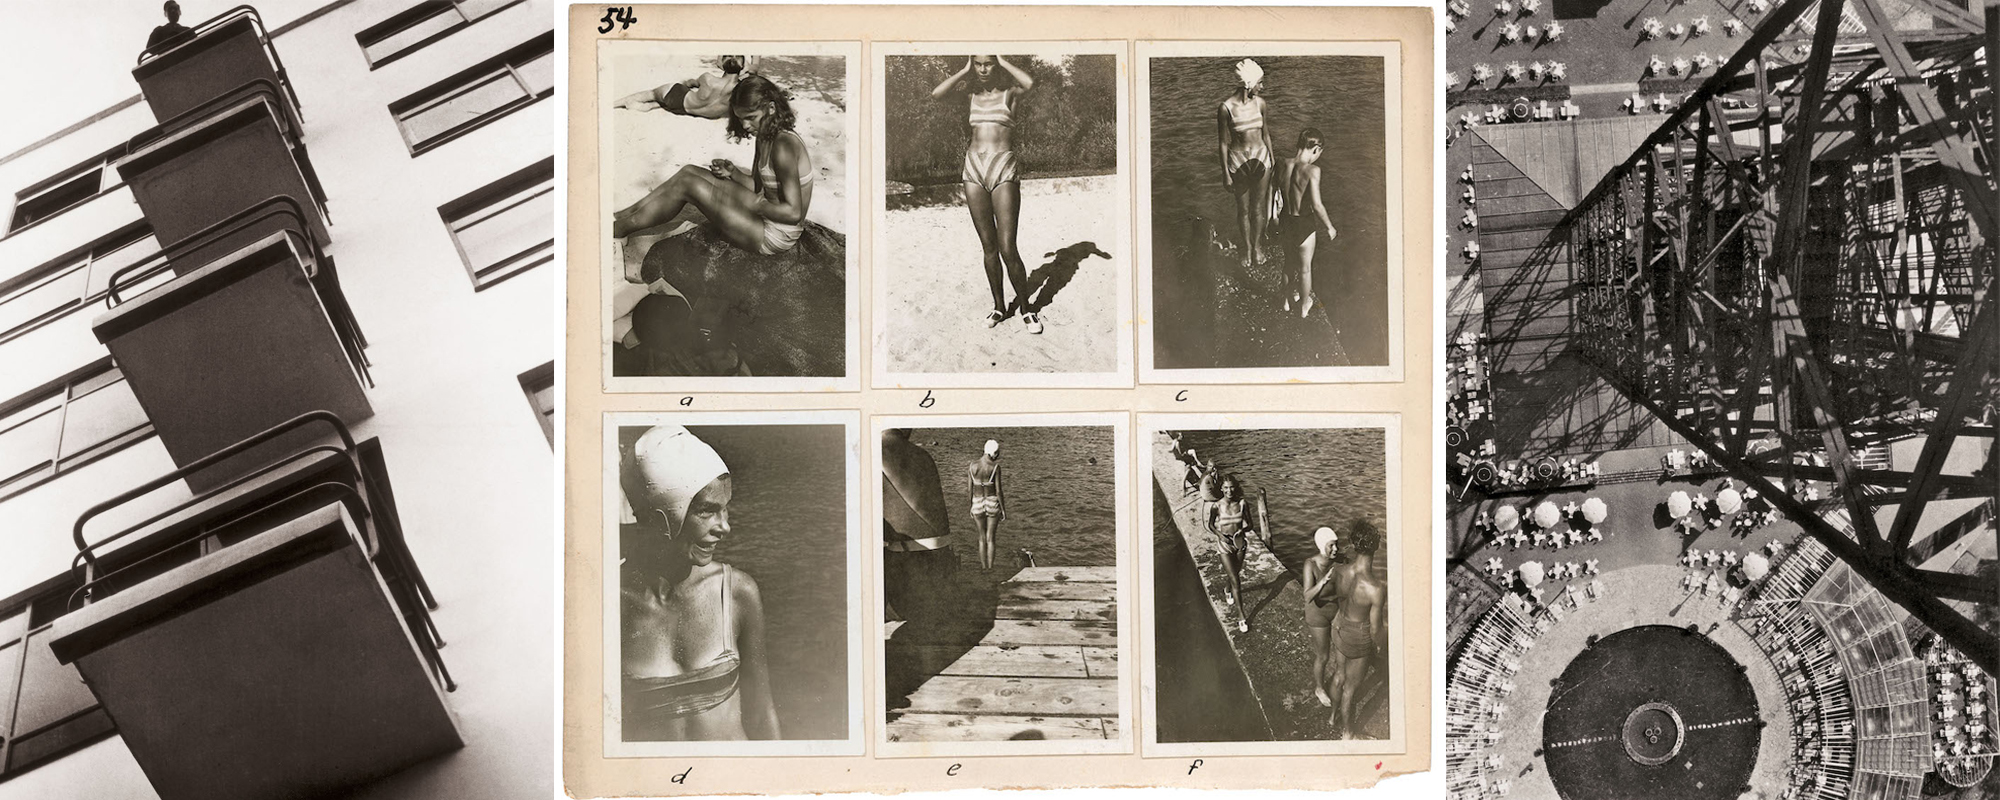 Dafna Talmor, László Moholy-Nagy & Josh Kern- The Photographic Notebook – AMERICAN SUBURB X